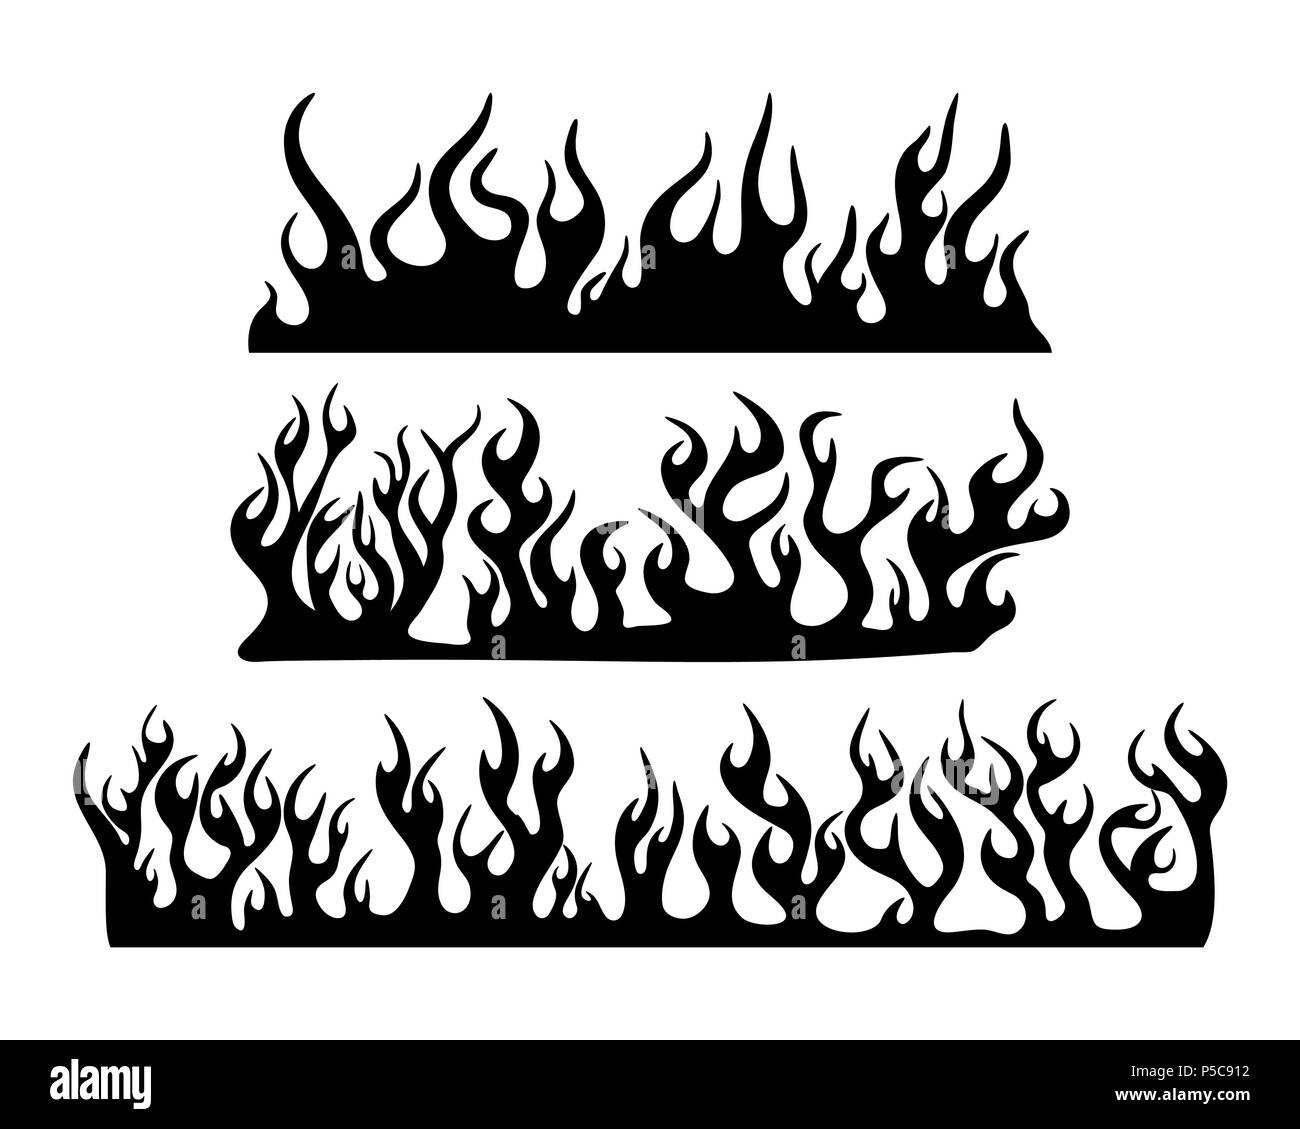 Feu flamme brûlant ensemble silhouette conception horizontale bannière isolated on white Illustration de Vecteur